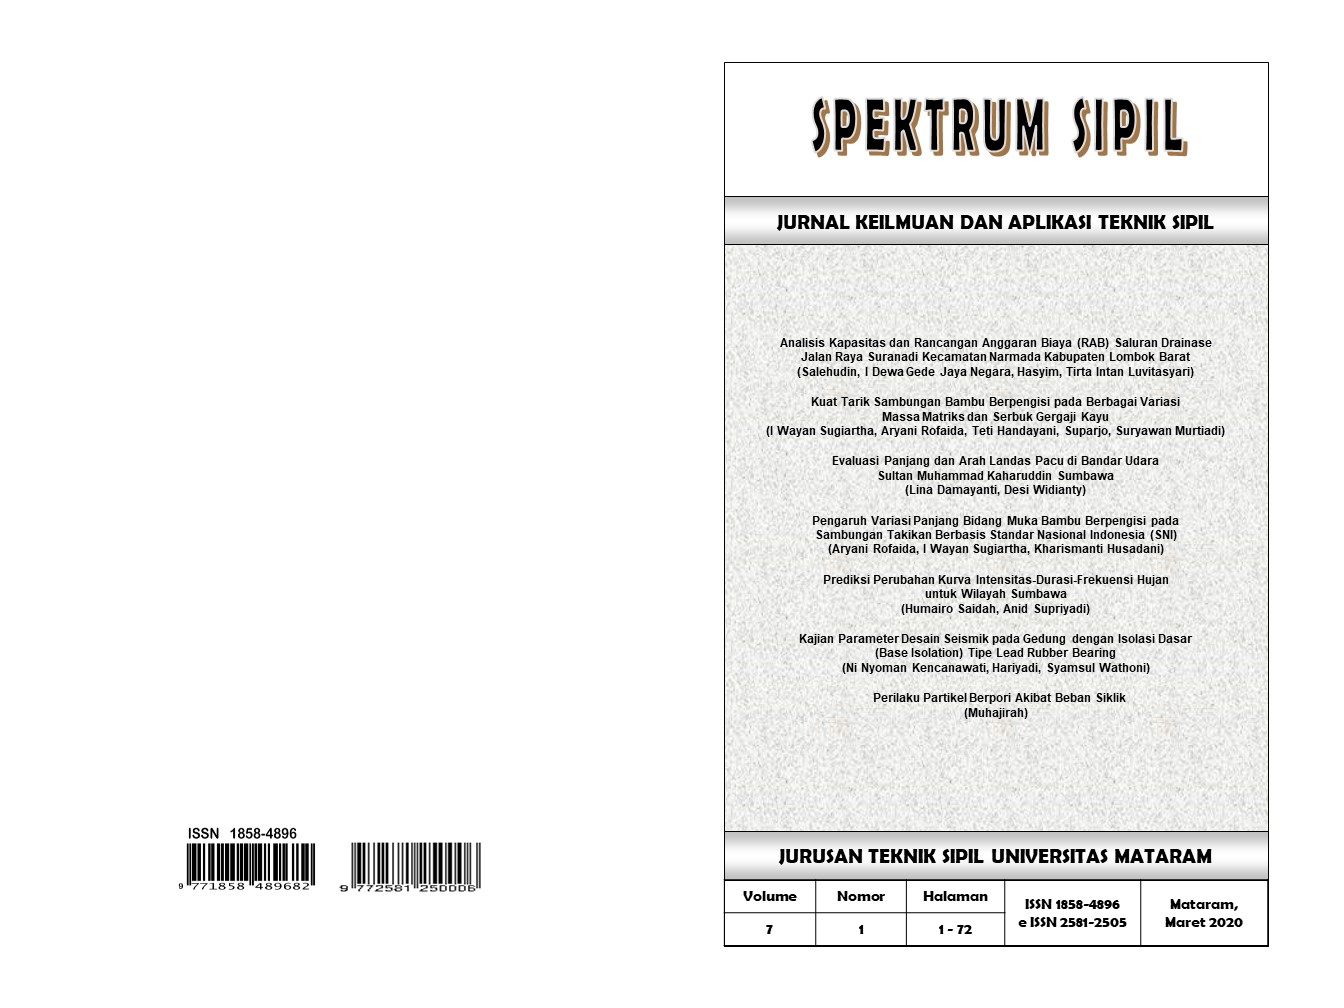 					View Vol. 7 No. 1 (2020): SPEKTRUM SIPIL
				